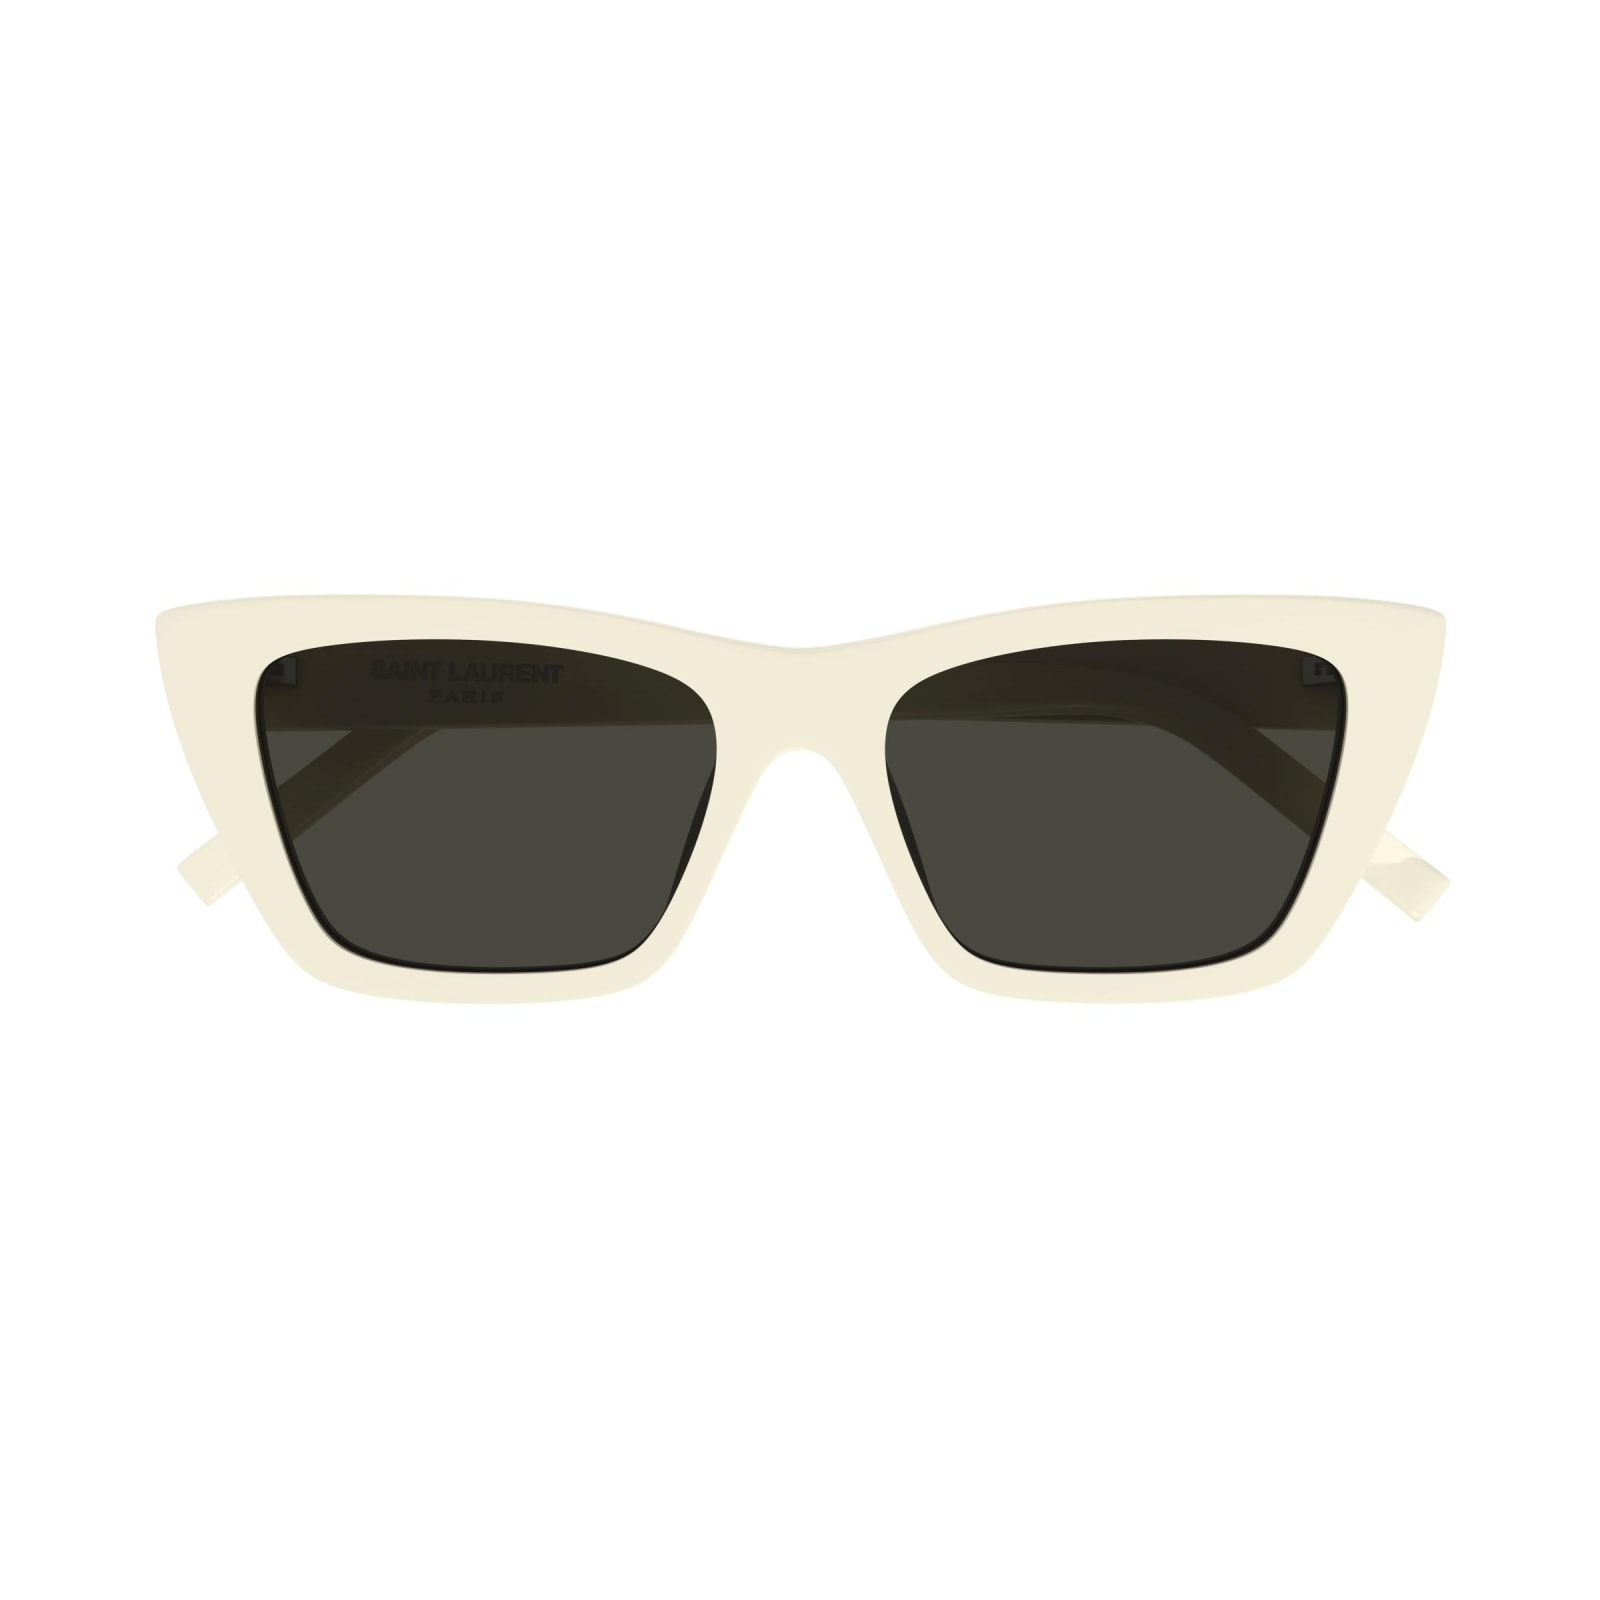 Shop Saint Laurent Sunglasses In Avorio/grigio